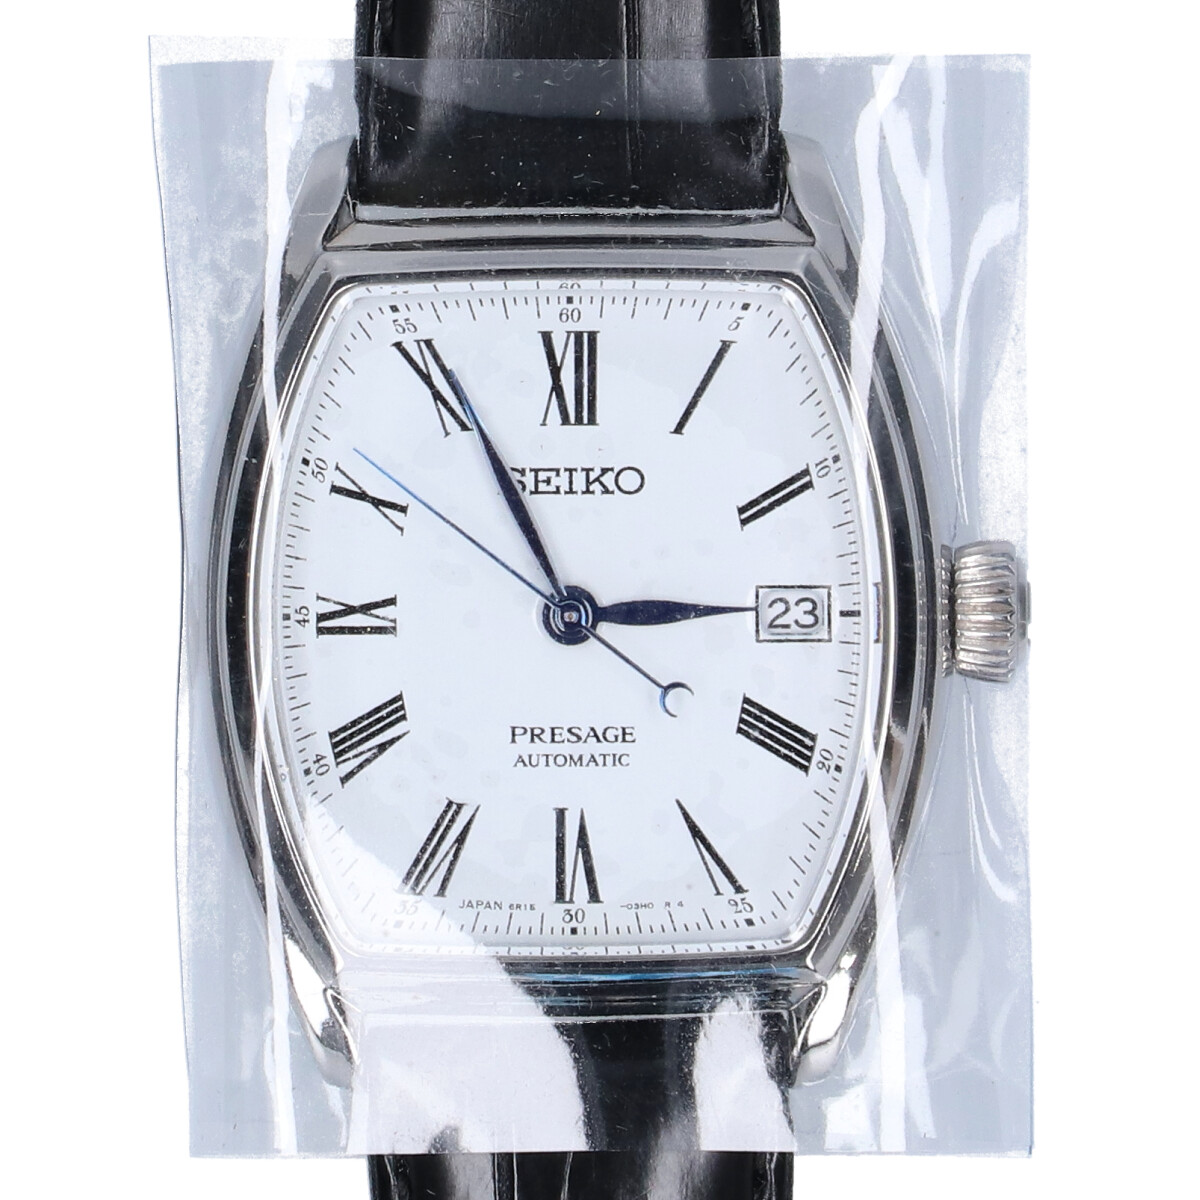 セイコーのSARX051 プレサージュ オートマチック カレンダー シースルーバック 手巻き付自動巻き 腕時計の買取実績です。